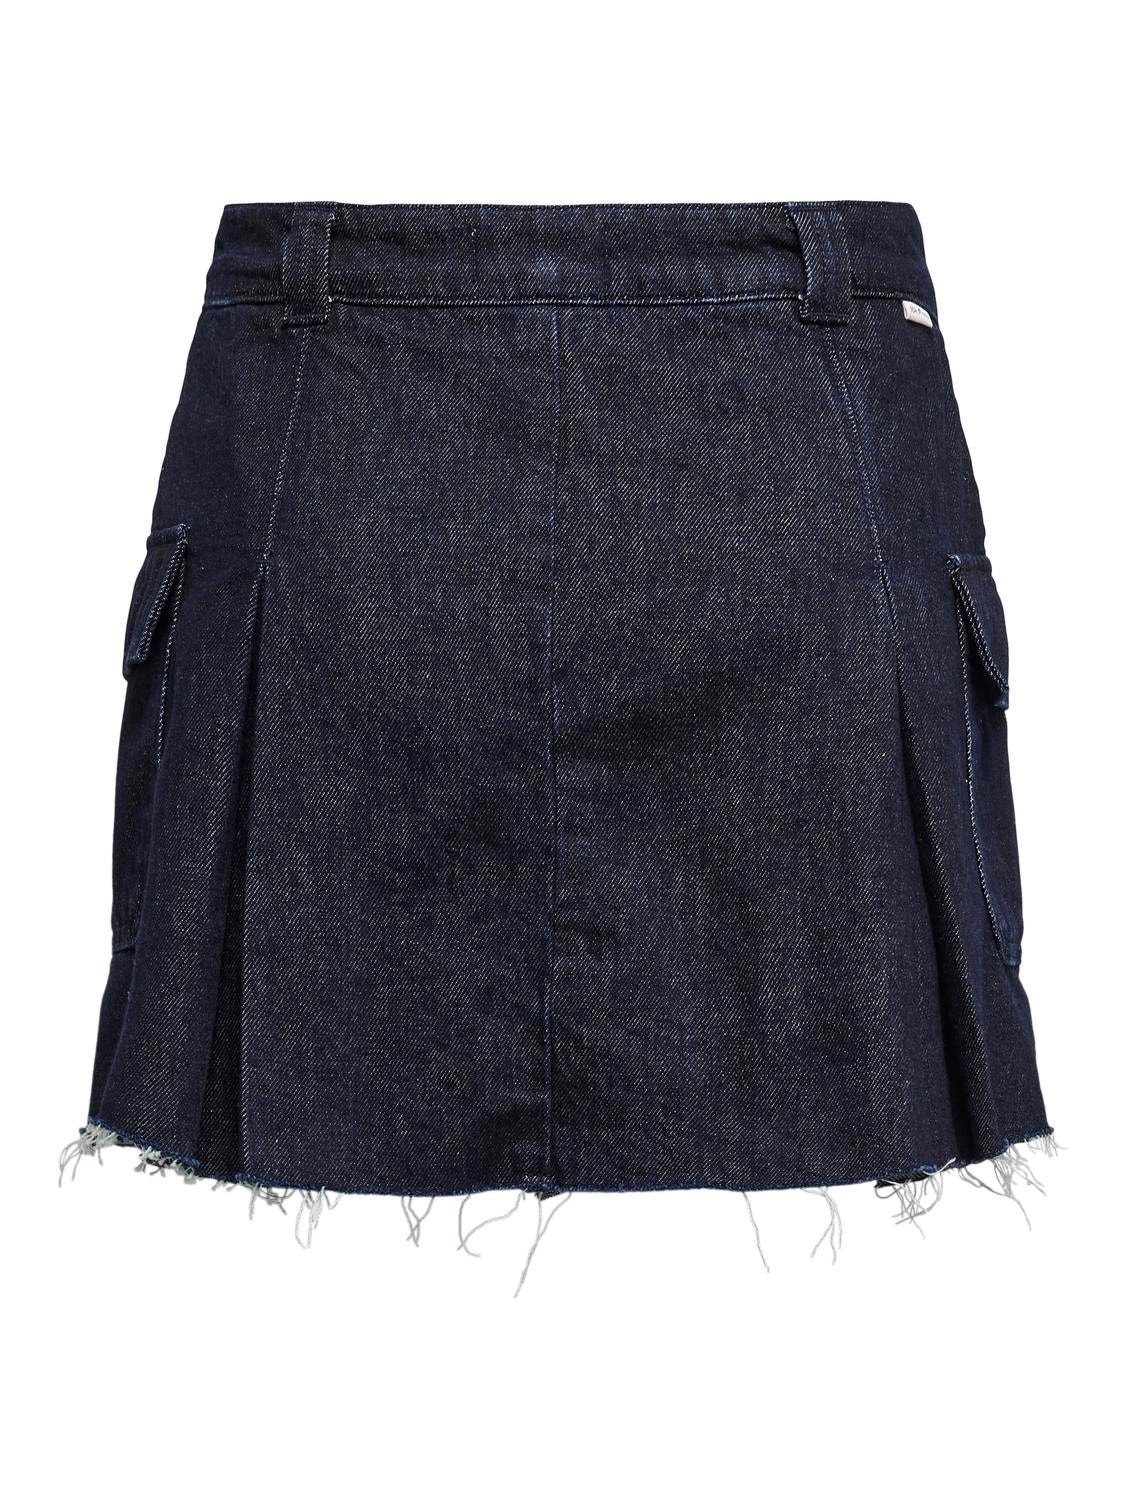 ONLY Minifalda Cintura media -Dark Blue Denim - 15309978